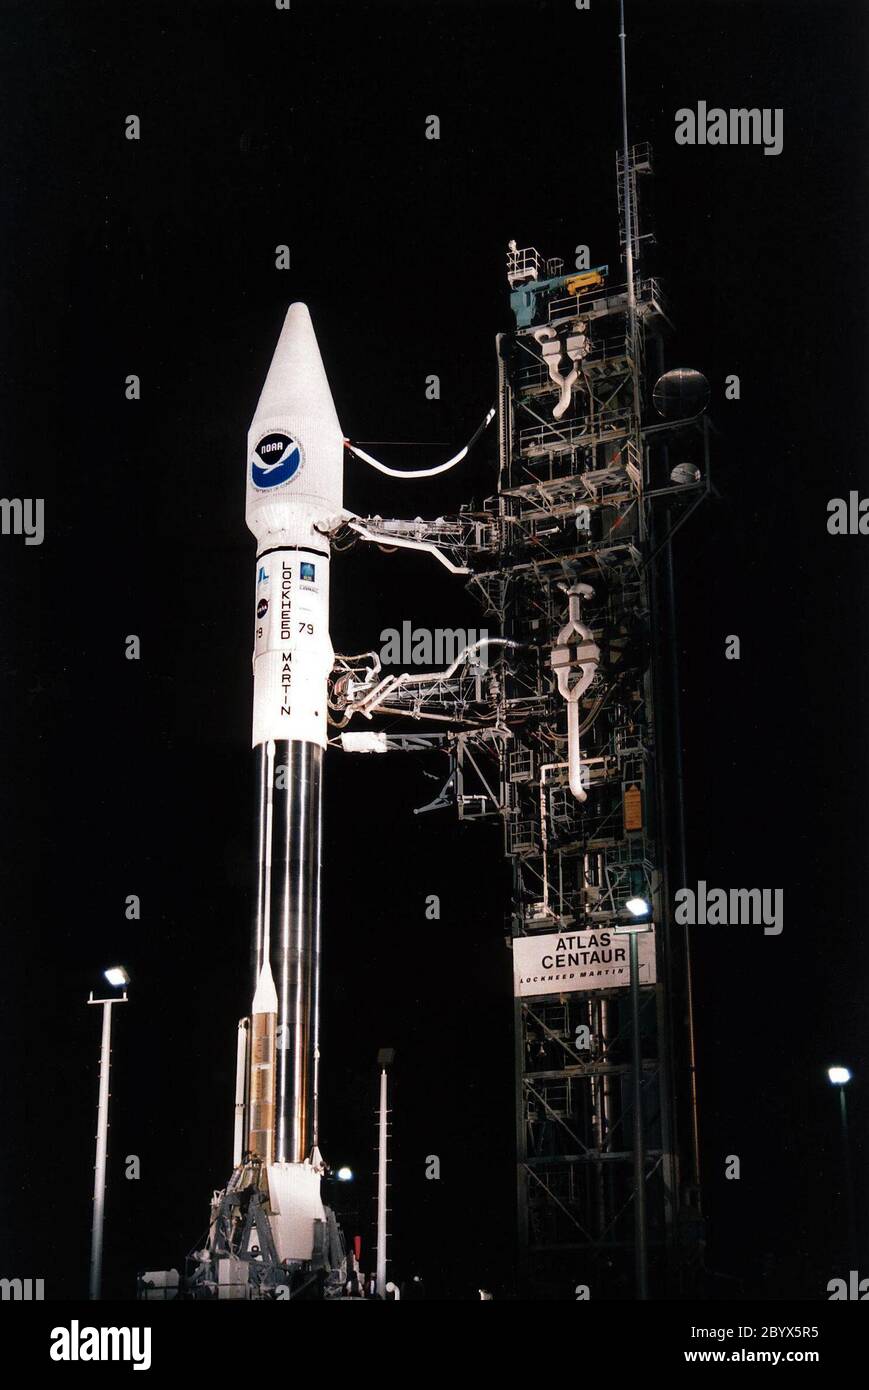 Le satellite météorologique GOS-K se lève du Launch Pad 36B à la station aérienne de Cape Canaveral sur une fusée Atlas 1 (AC-79) à 1 h 49 HAE le 25 avril. Le GODS-K est le troisième vaisseau spatial à être lancé dans la nouvelle série avancée de satellites météorologiques géostationnaires pour la National Oceanic and Atmospheric Administration (NOAA). Le GOO-K est construit pour la NASA et la NOAA par Space Systems/LORAL de Palo Alto, en Californie. Le satellite météorologique avancé a été construit et lancé pour la NOAA sous la direction technique et la gestion de projet par le Goddard Space Flight Centre de la NASA. Une fois en orbite géosynchrone à 22,240 M. Banque D'Images